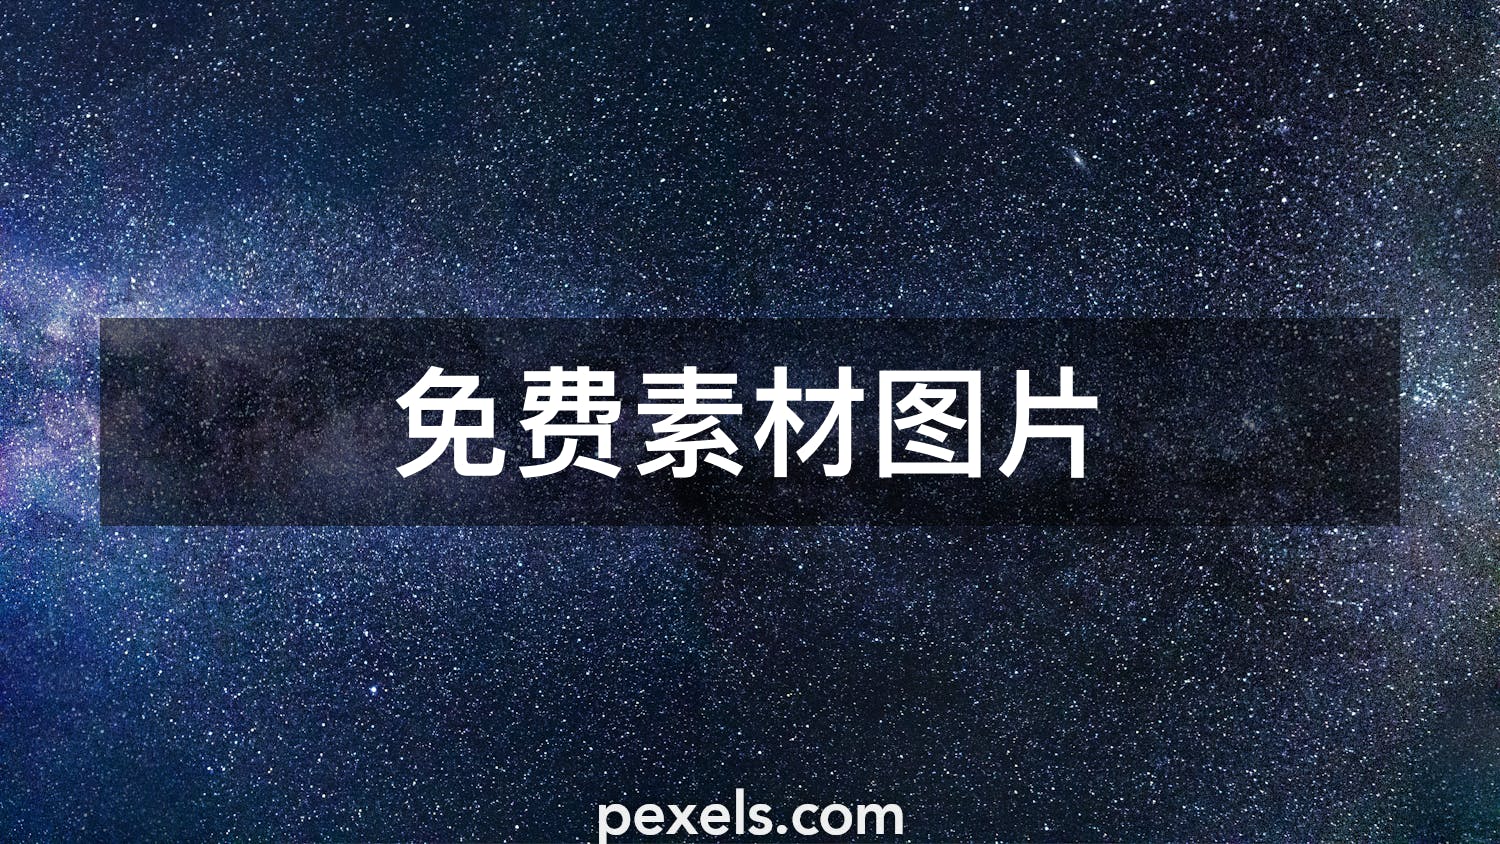 100 000 最精彩的星空图片 100 免费下载 Pexels 素材图片